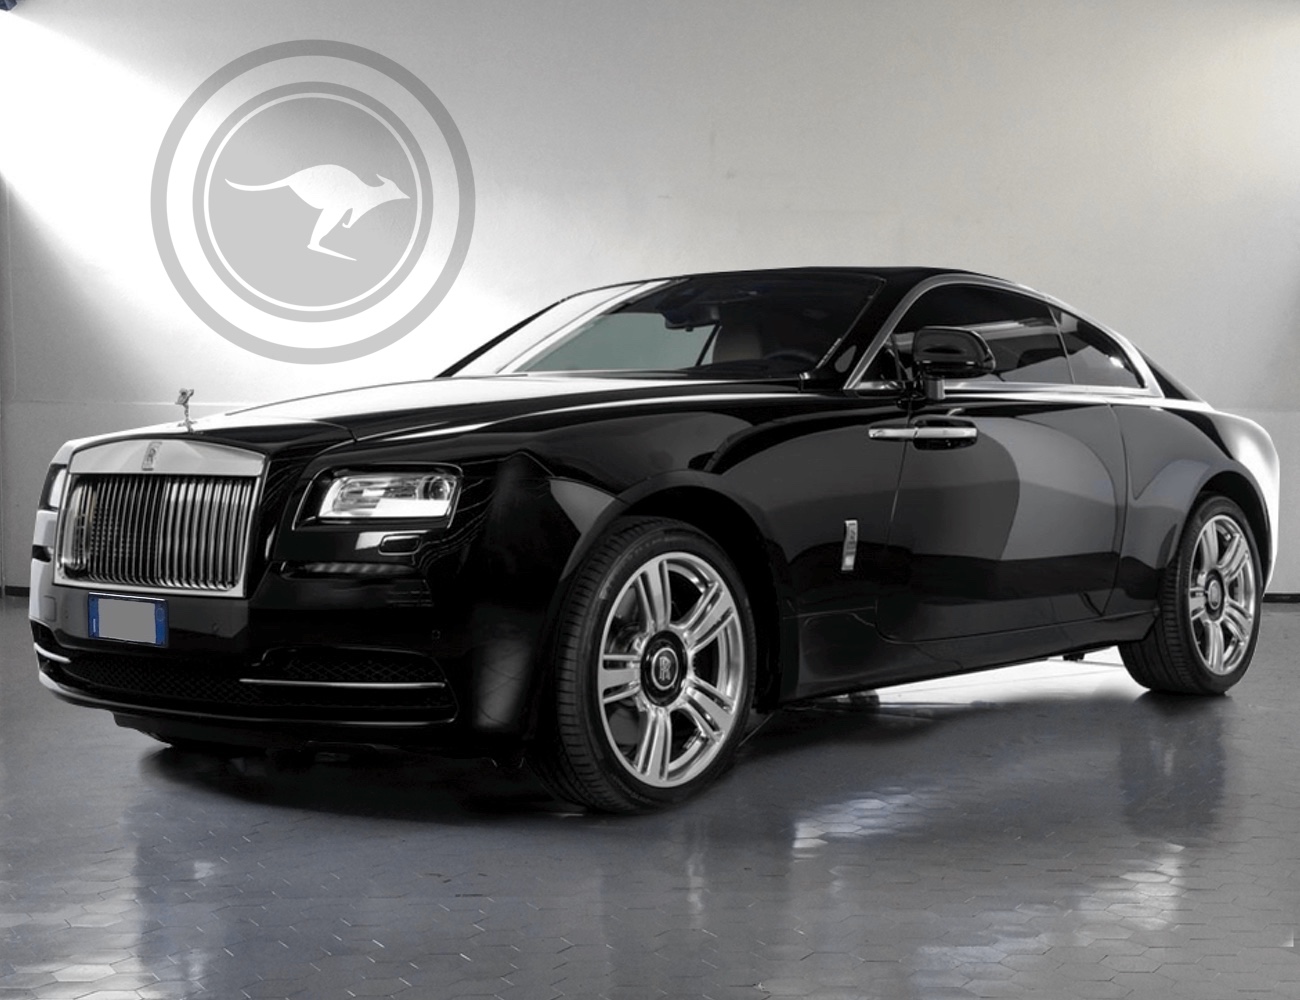 Rolls Royce Wraith a noleggio a Milano, Firenze o Como